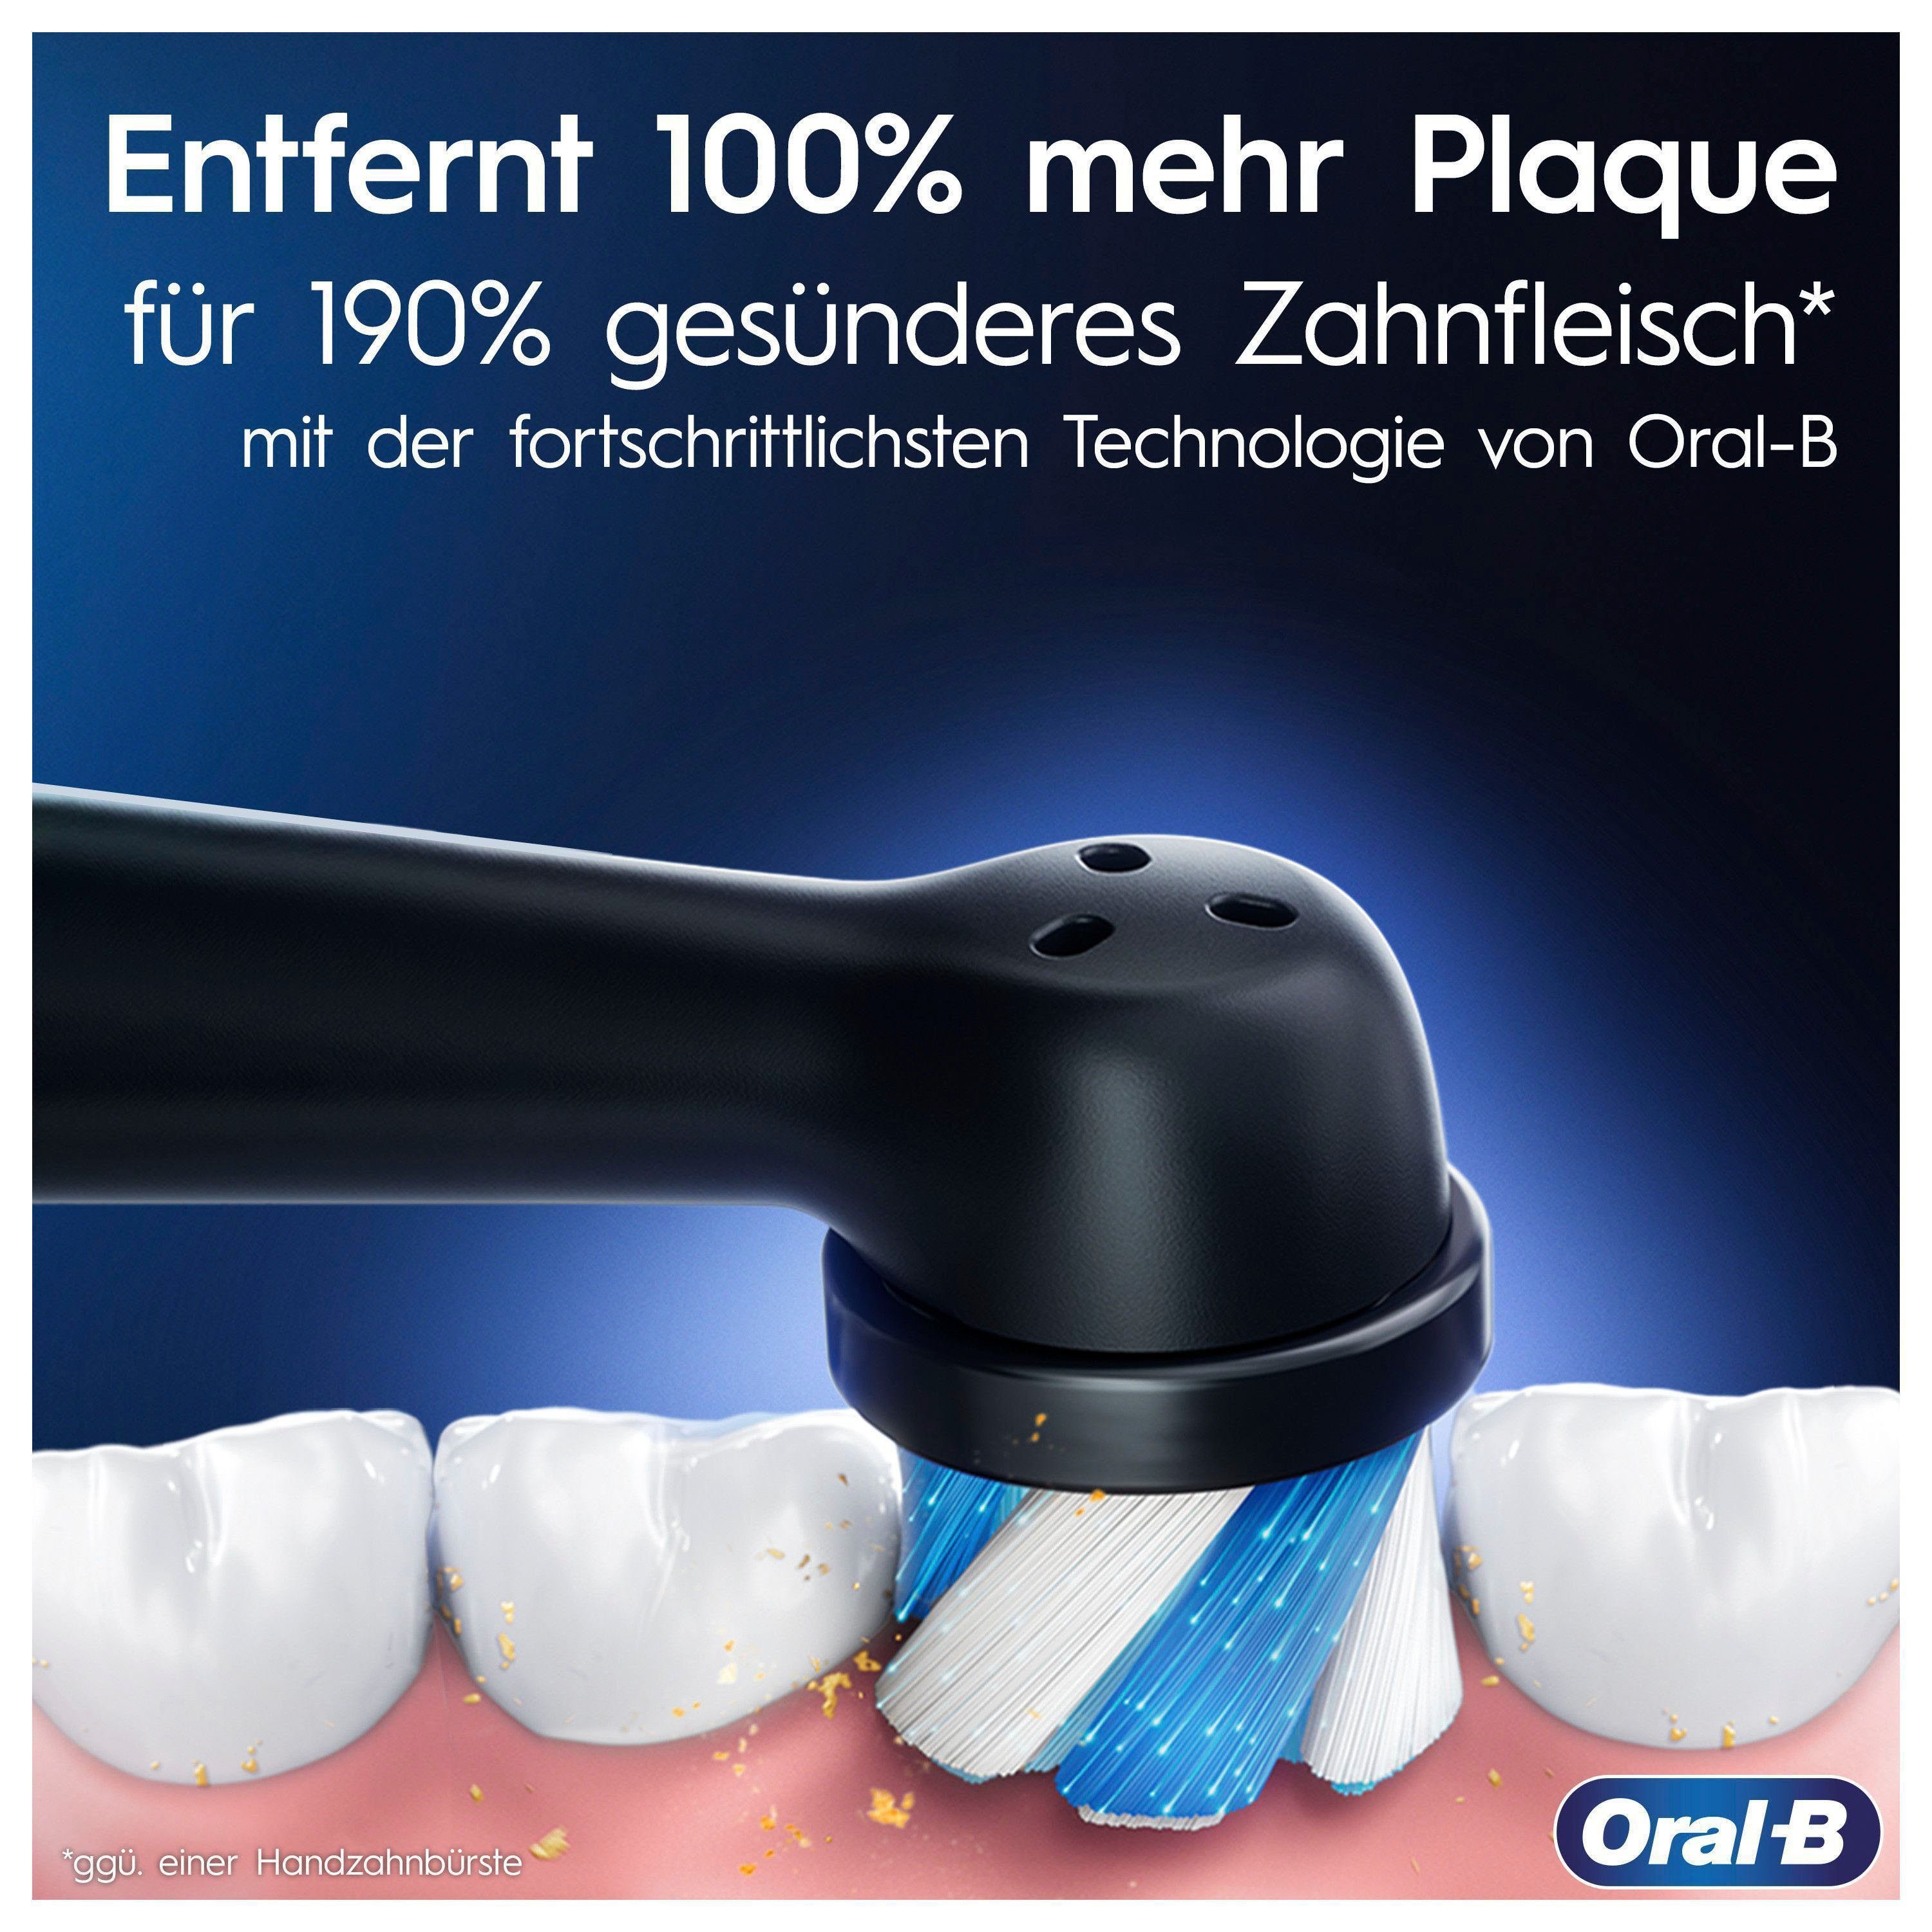 Oral-B Elektrische Zahnbürste iO 8, Farbdisplay black onyx 6 & Aufsteckbürsten: Magnet-Technologie, 2 Putzmodi, St., Reiseetui mit